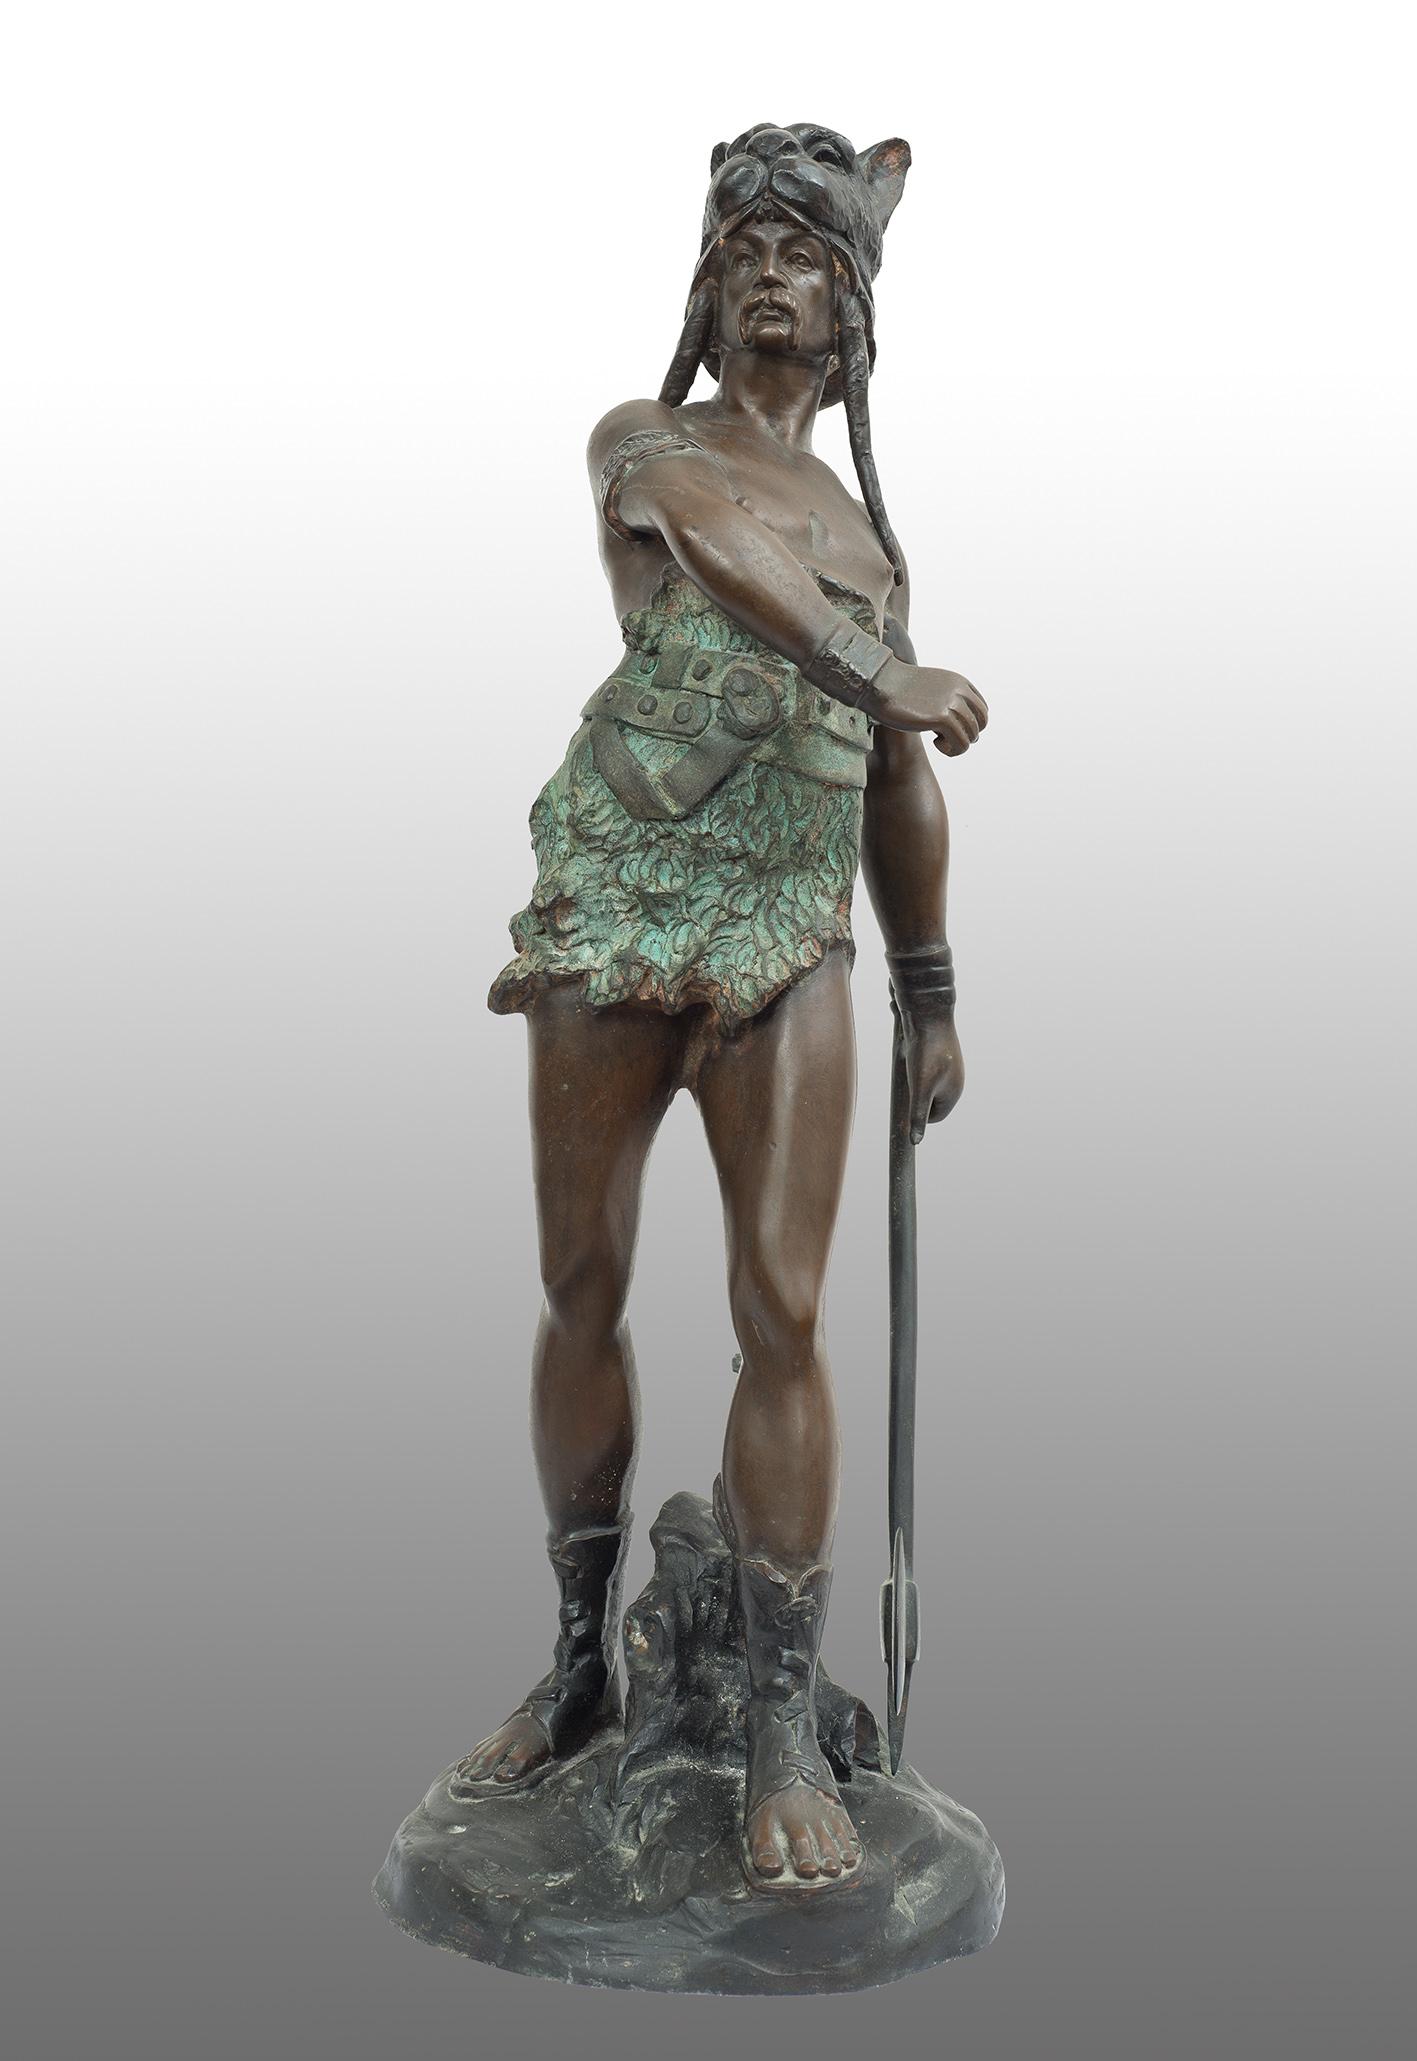 Antique patinated bronze sculpture depicting "Vercingetorix."